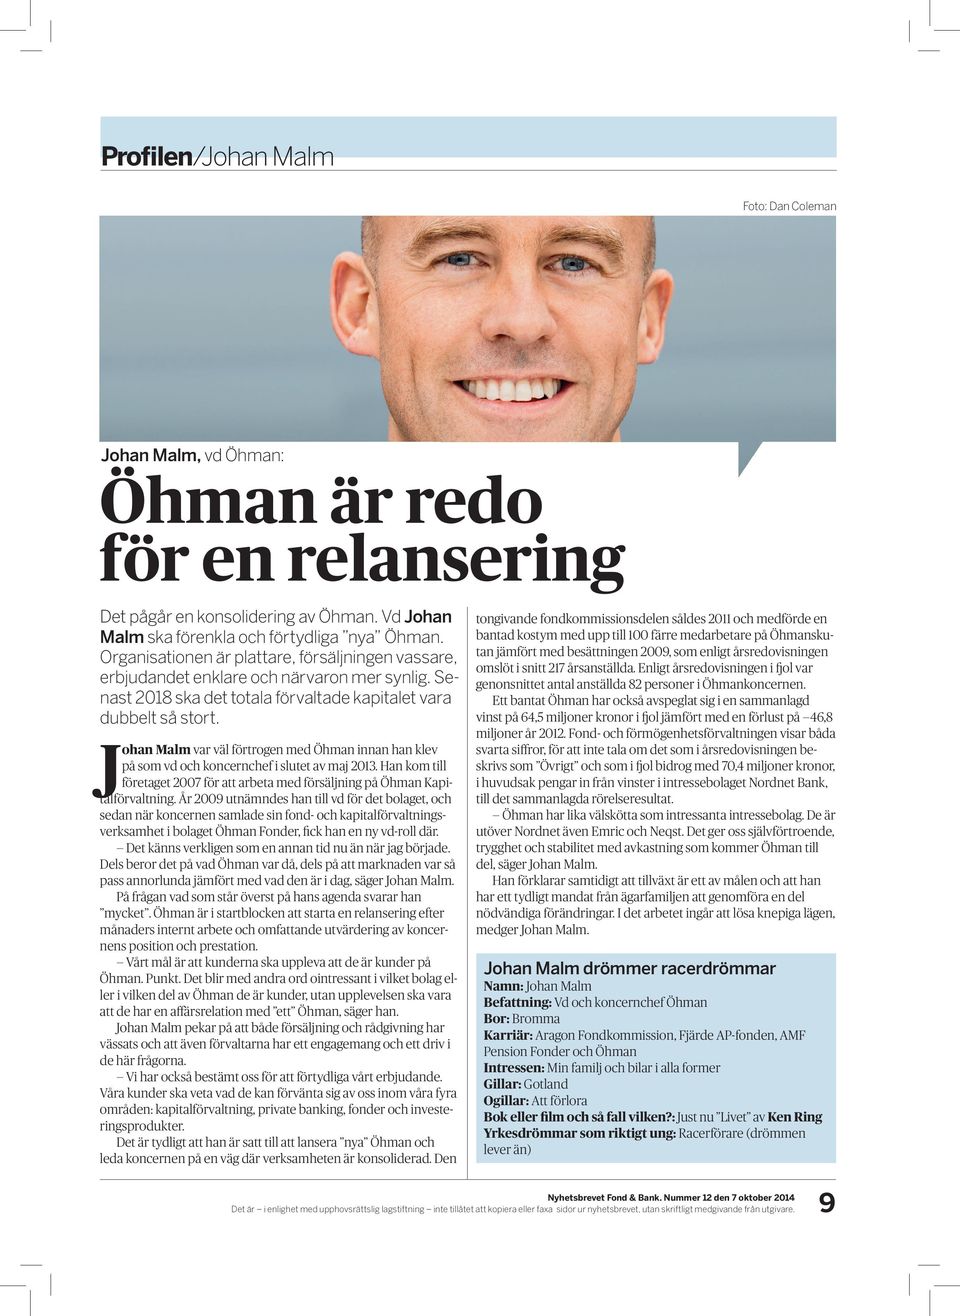 Johan Malm var väl förtrogen med Öhman innan han klev på som vd och koncernchef i slutet av maj 2013. Han kom till företaget 2007 för att arbeta med försäljning på Öhman Kapitalförvaltning.